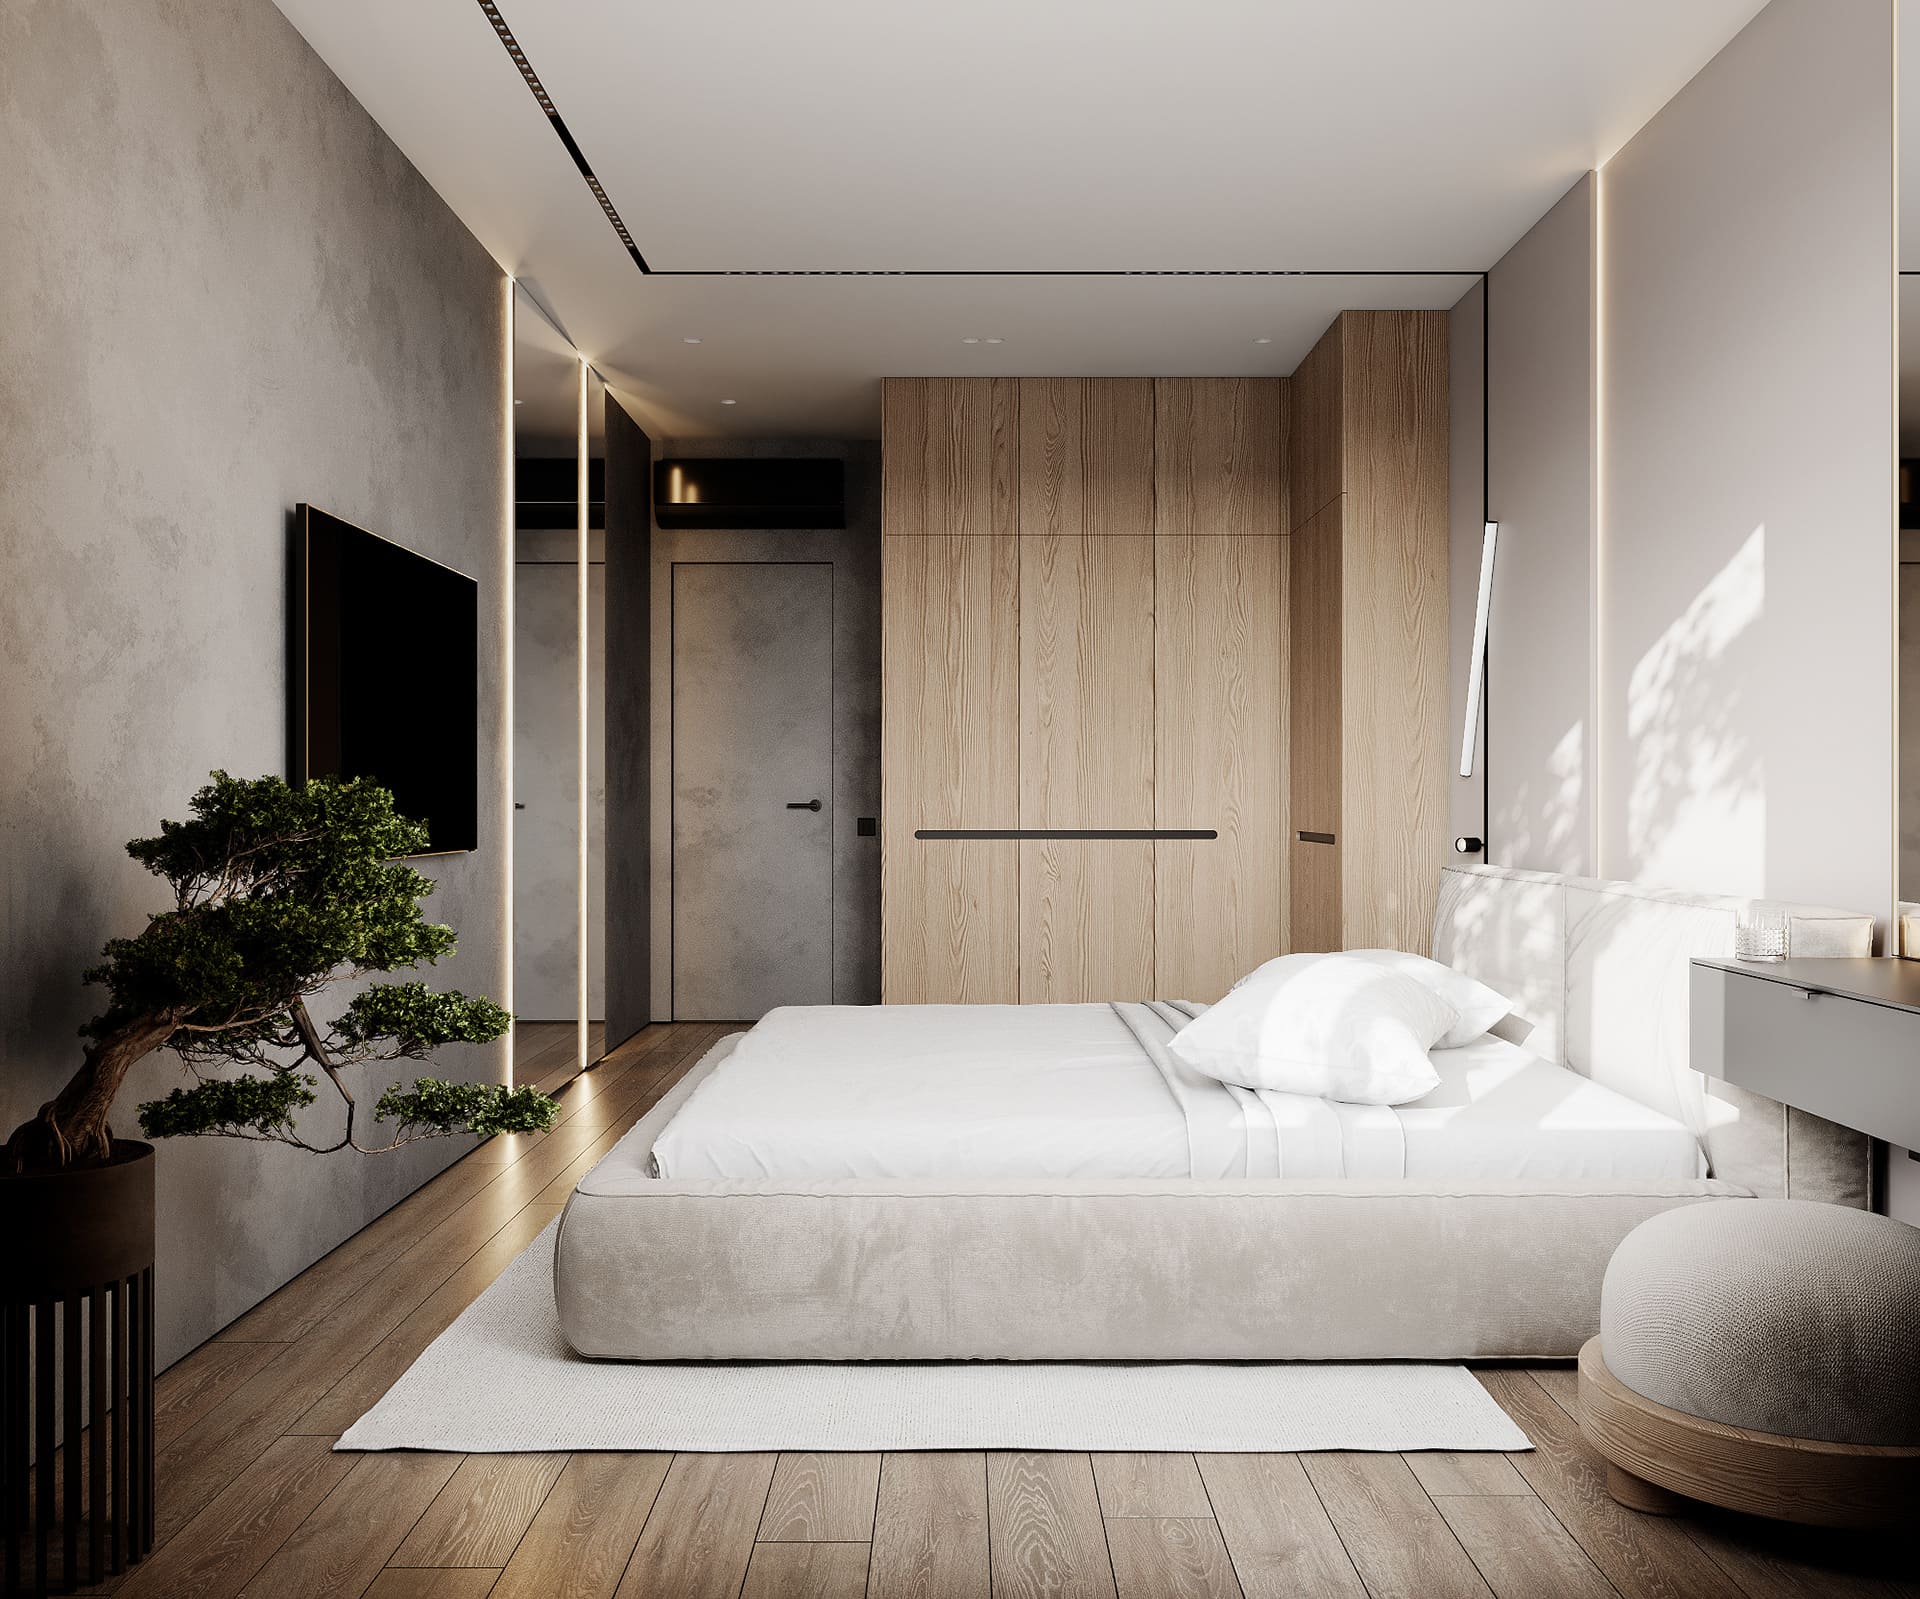 Лаконічна квартира у стилі мінімалізм, спальня, фото 18